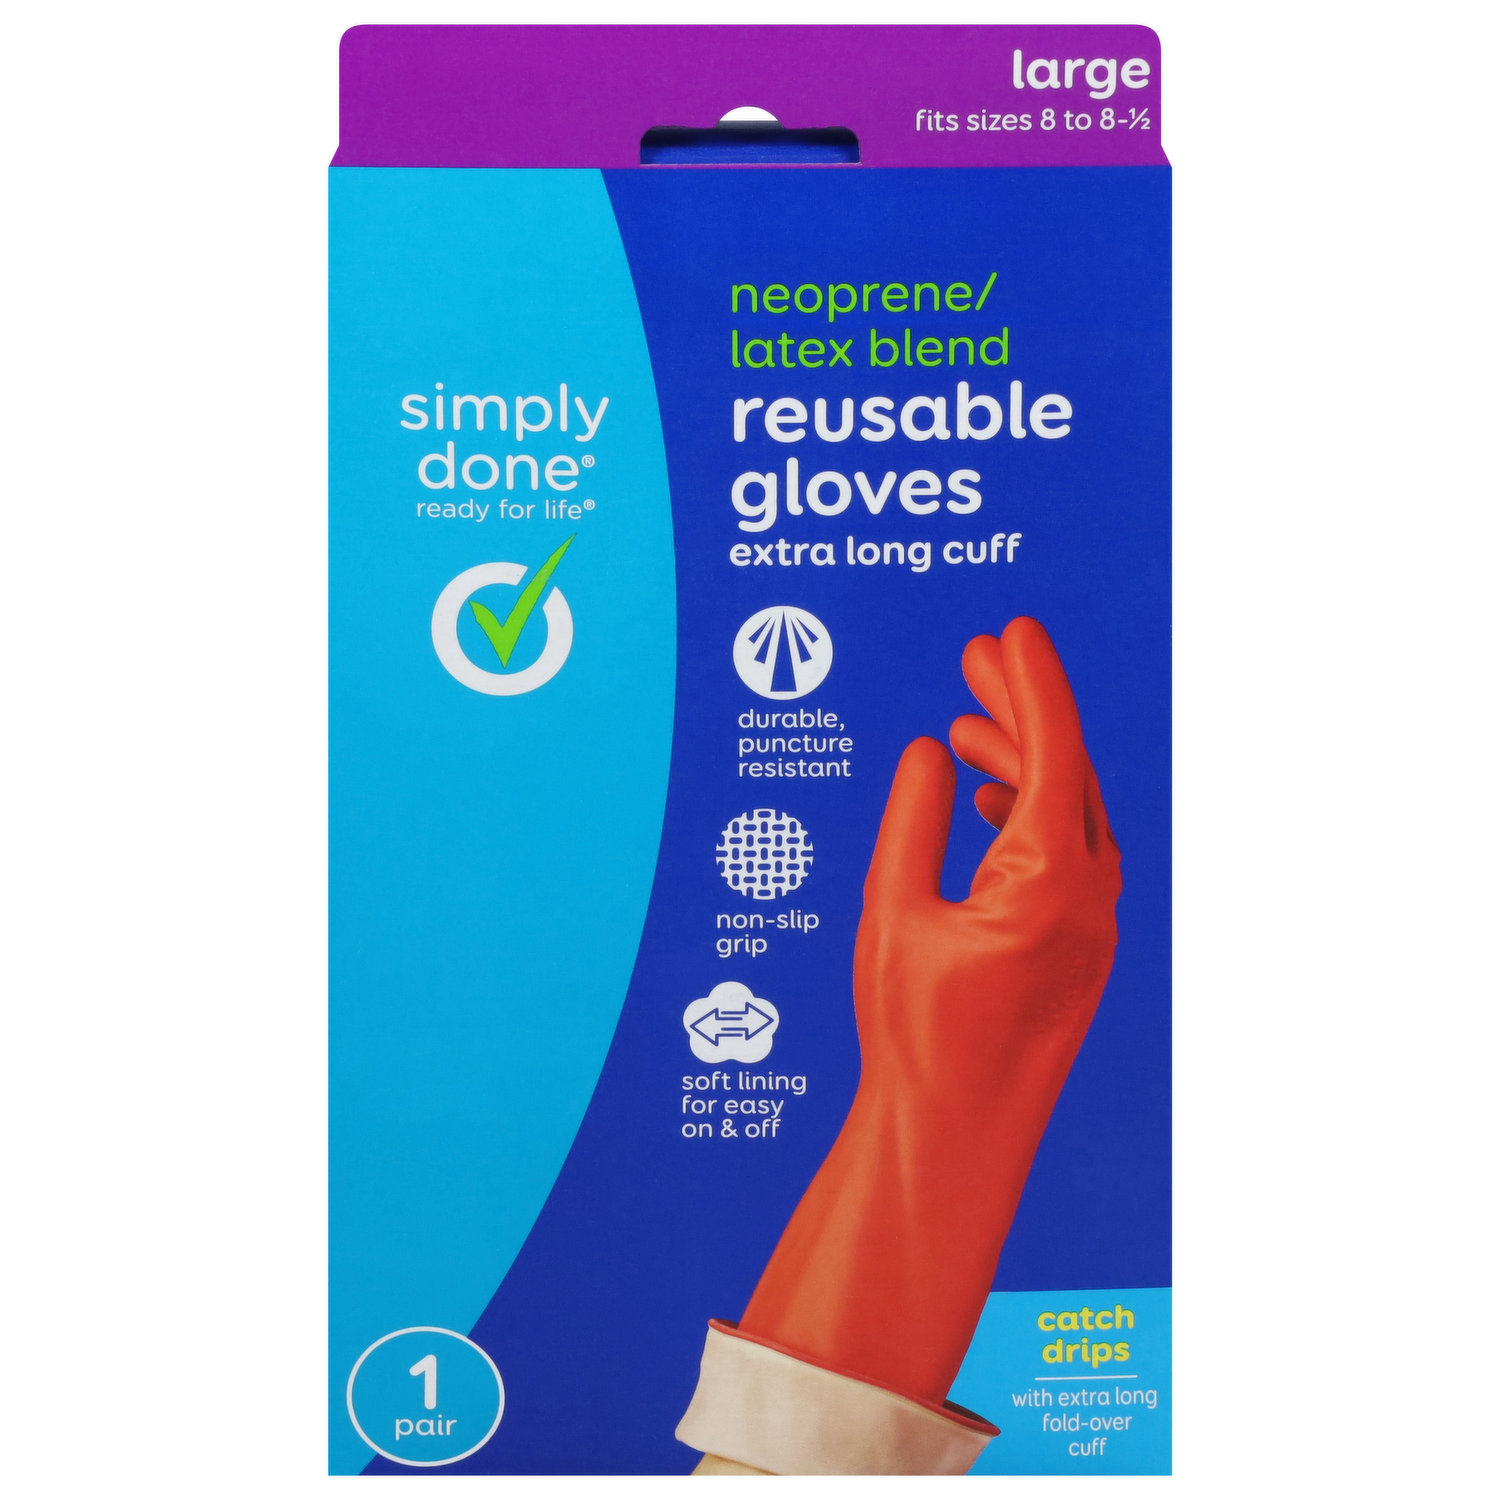 1 Pair Anti-slip Fishing Gloves Three Fingerless Soft Gloves For